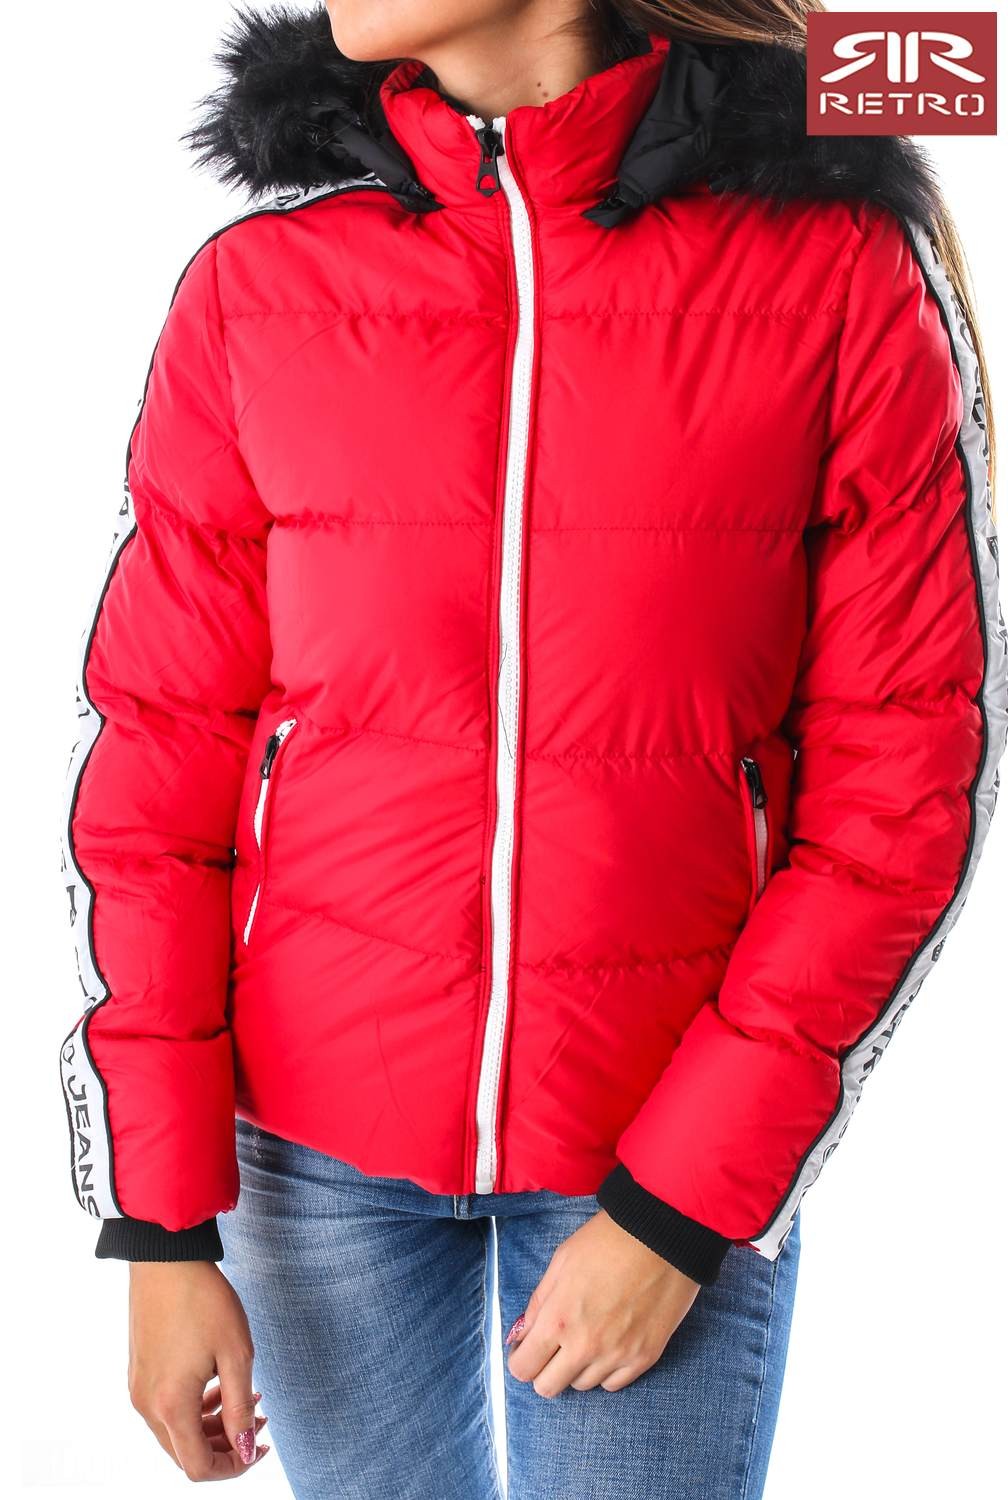 الإيمان السعرات الحرارية معطف  RetroJeans női kabát (Maria Jacket) 7302 | Retro női kabátok - RetroJeans  Női